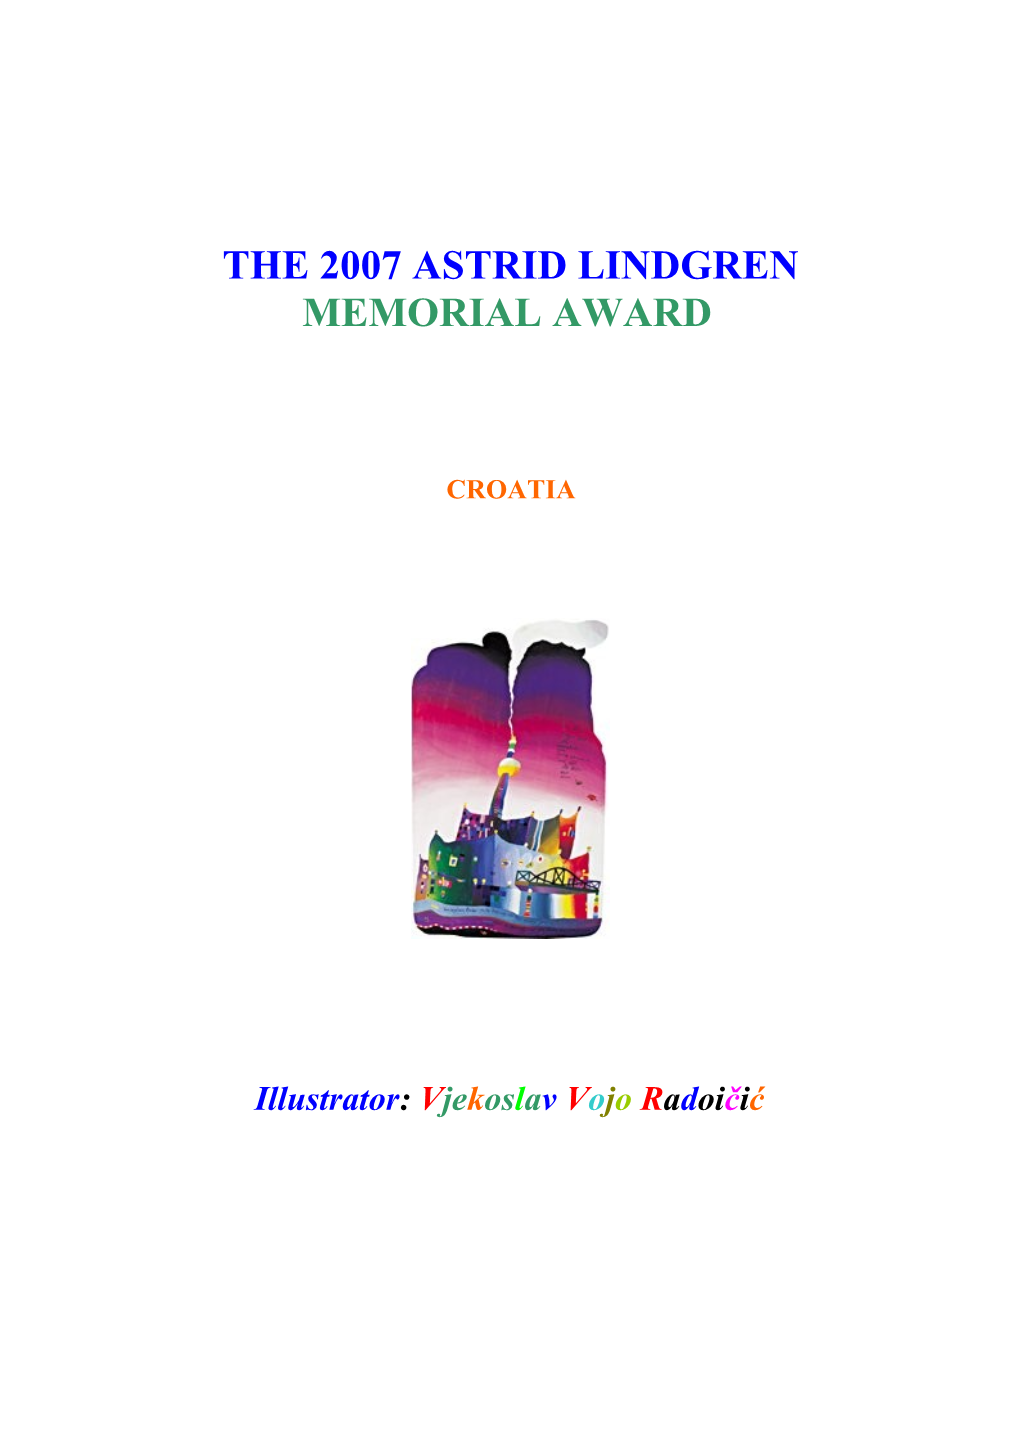 The 2007 Astrid Lindgren Memorial Award